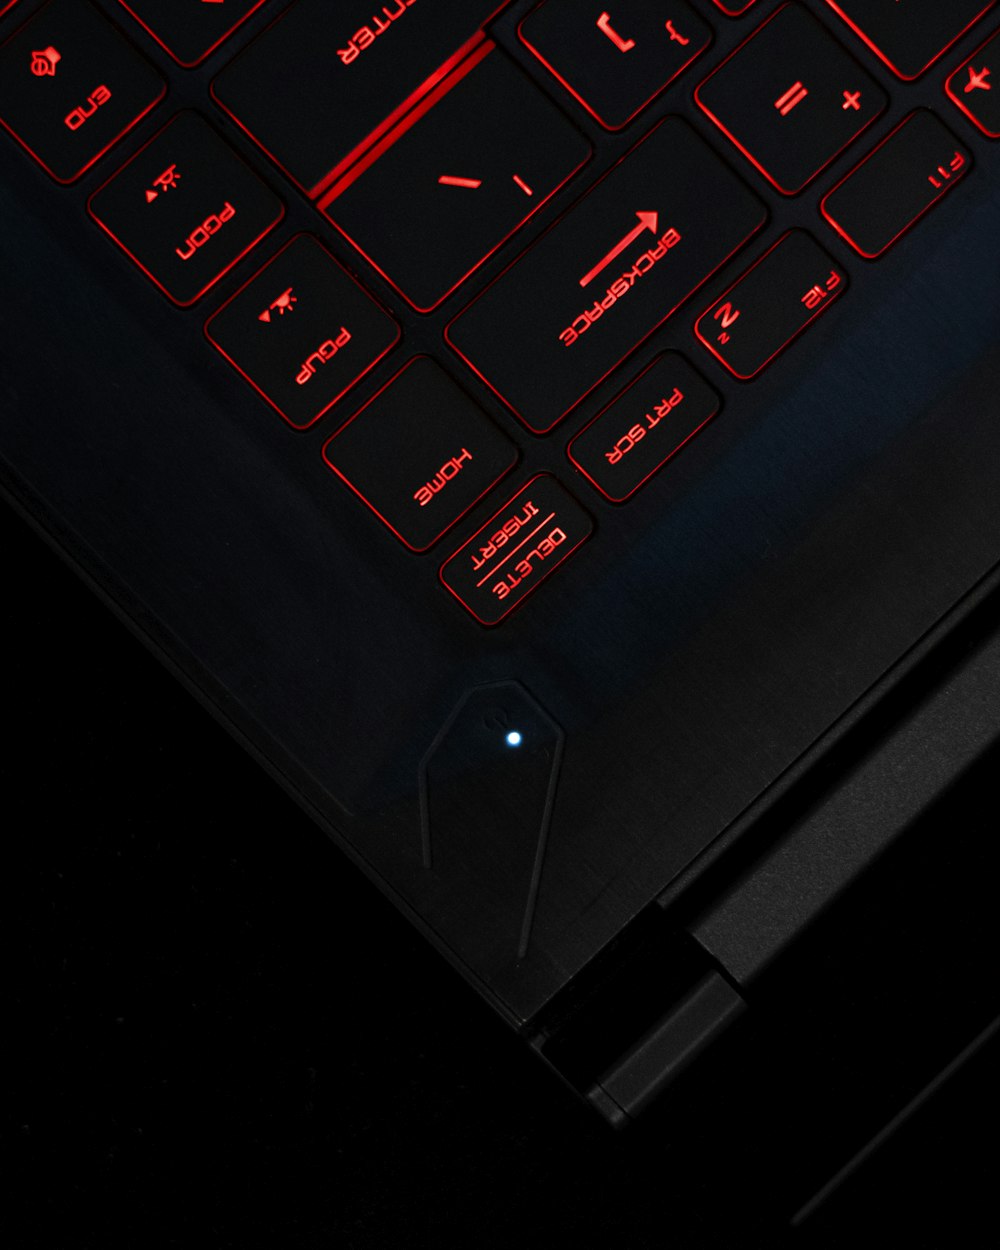 黒のラップトップコンピュータの電源がオンになり、キーボードが表示される